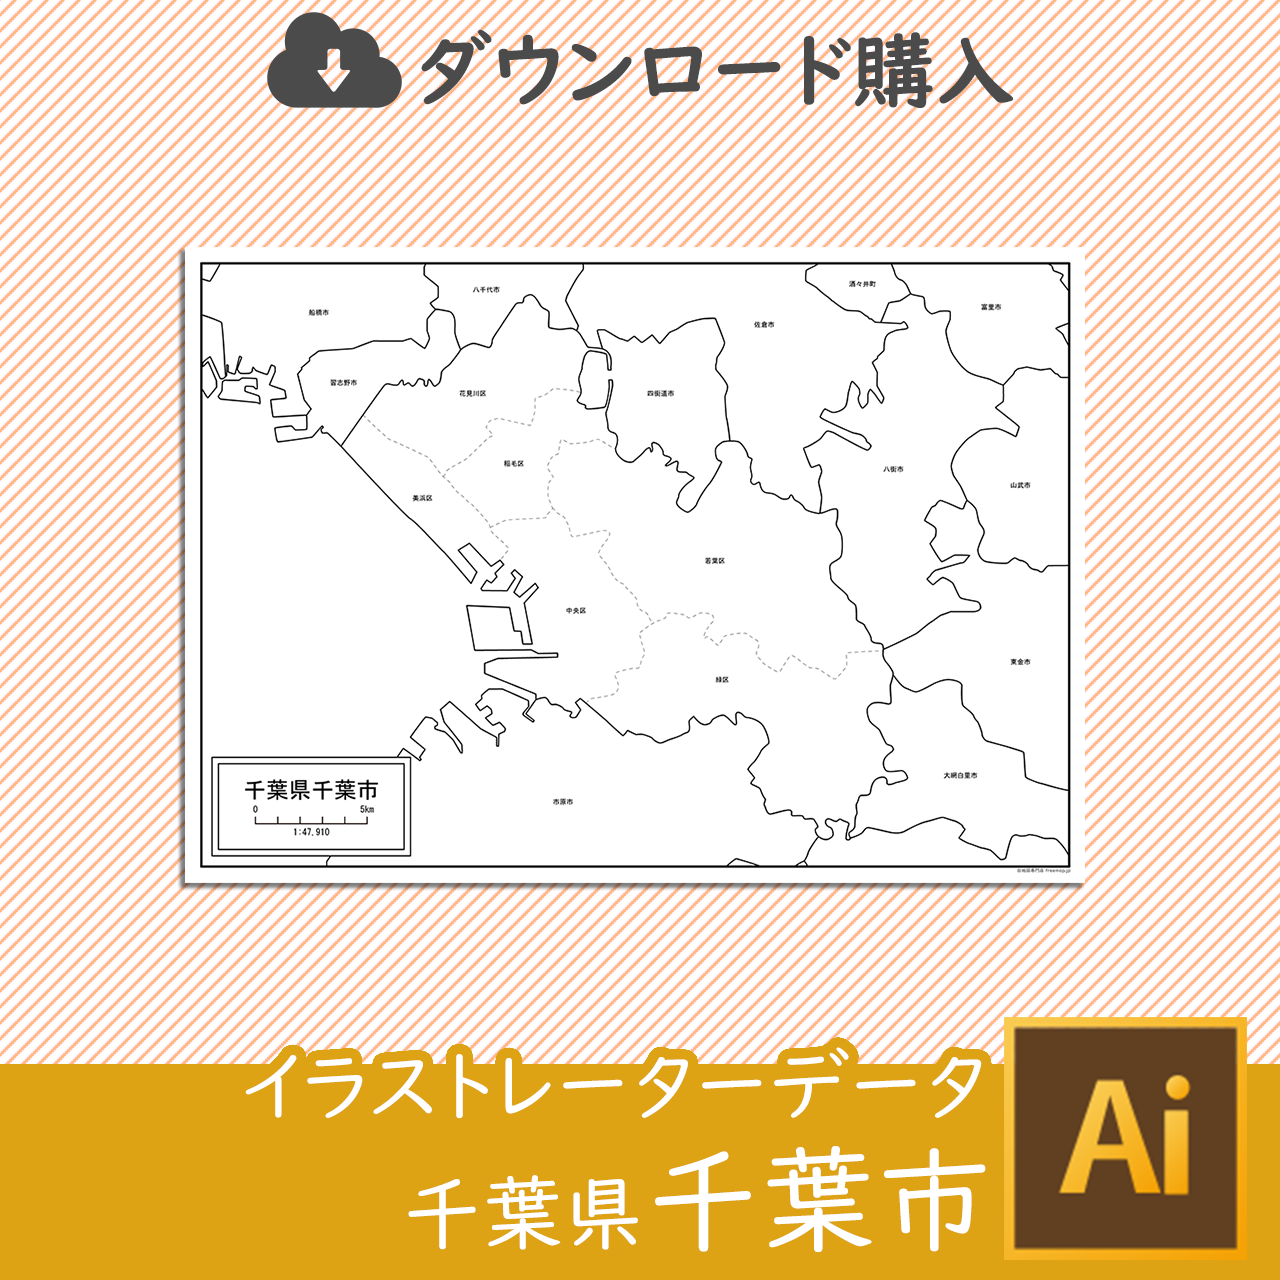 千葉県千葉市のaiデータのサムネイル画像